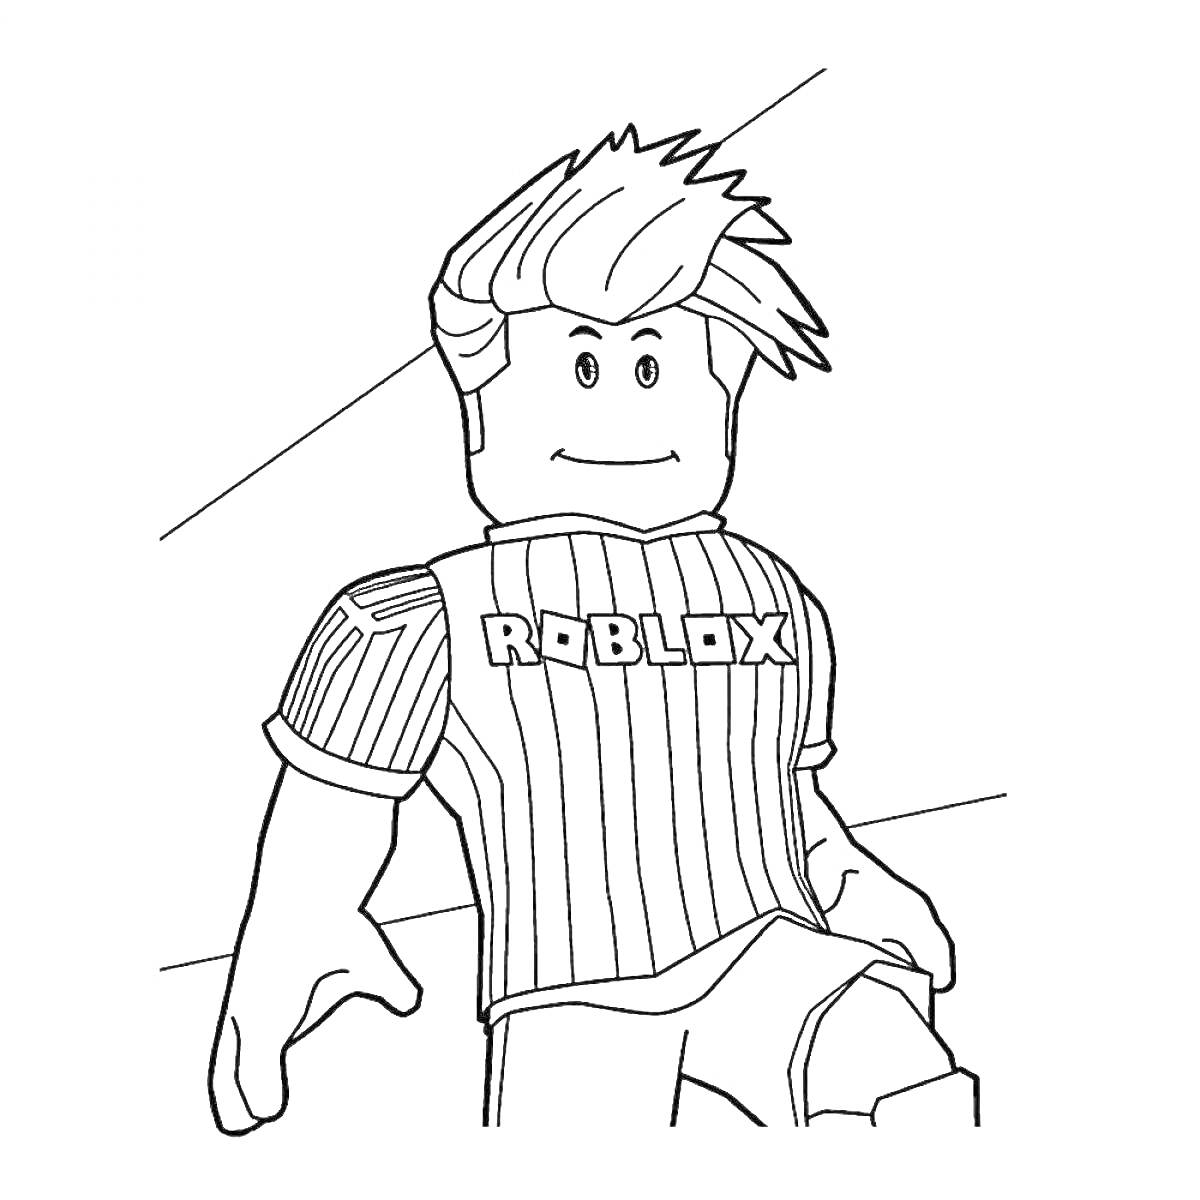 Раскраска Роблокс персонаж с прической, полосатой рубашкой и надписью 